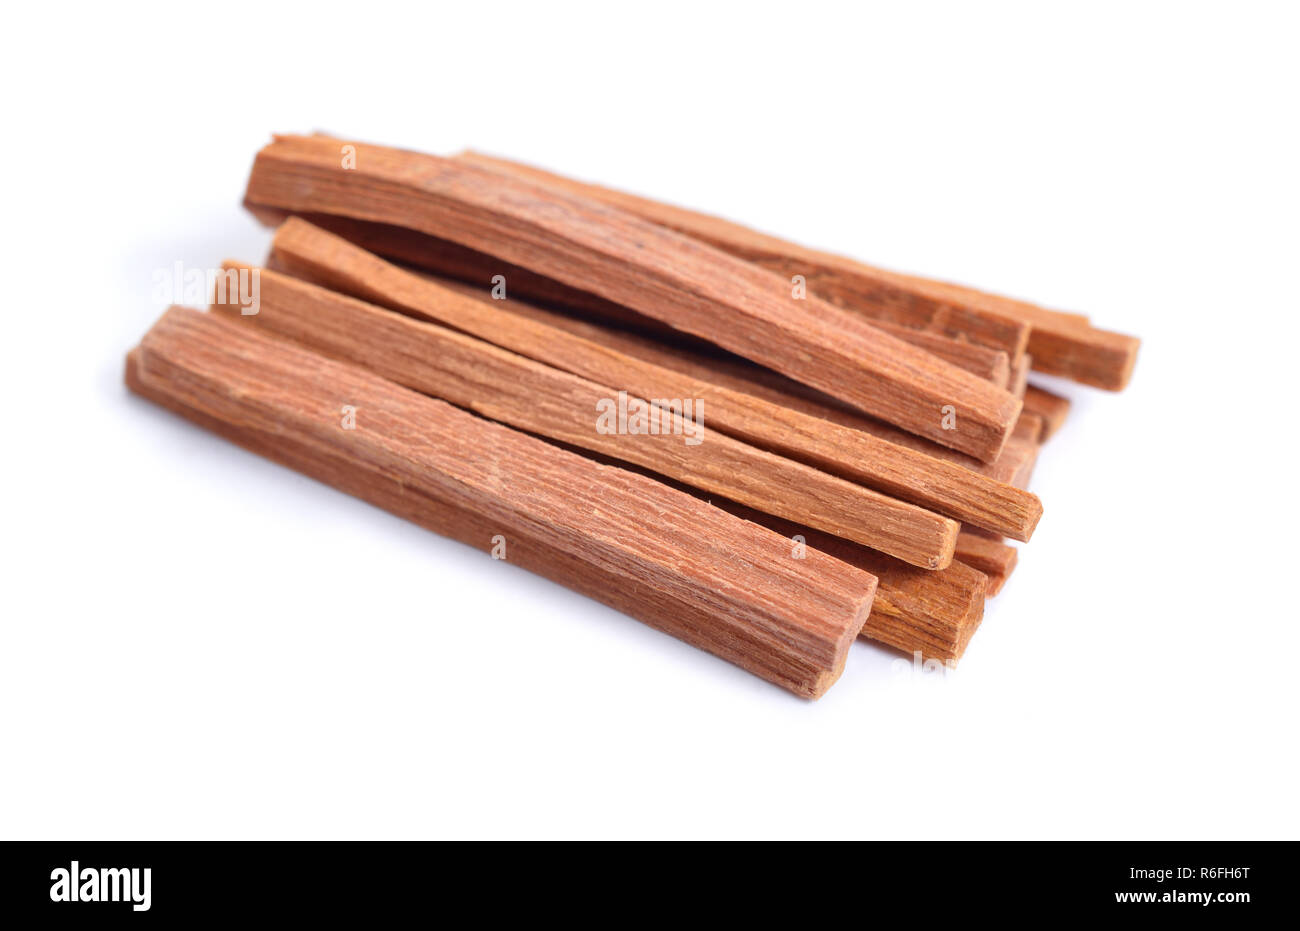 Chandan or sandalwood sticks isolated on white background. Stock Photo